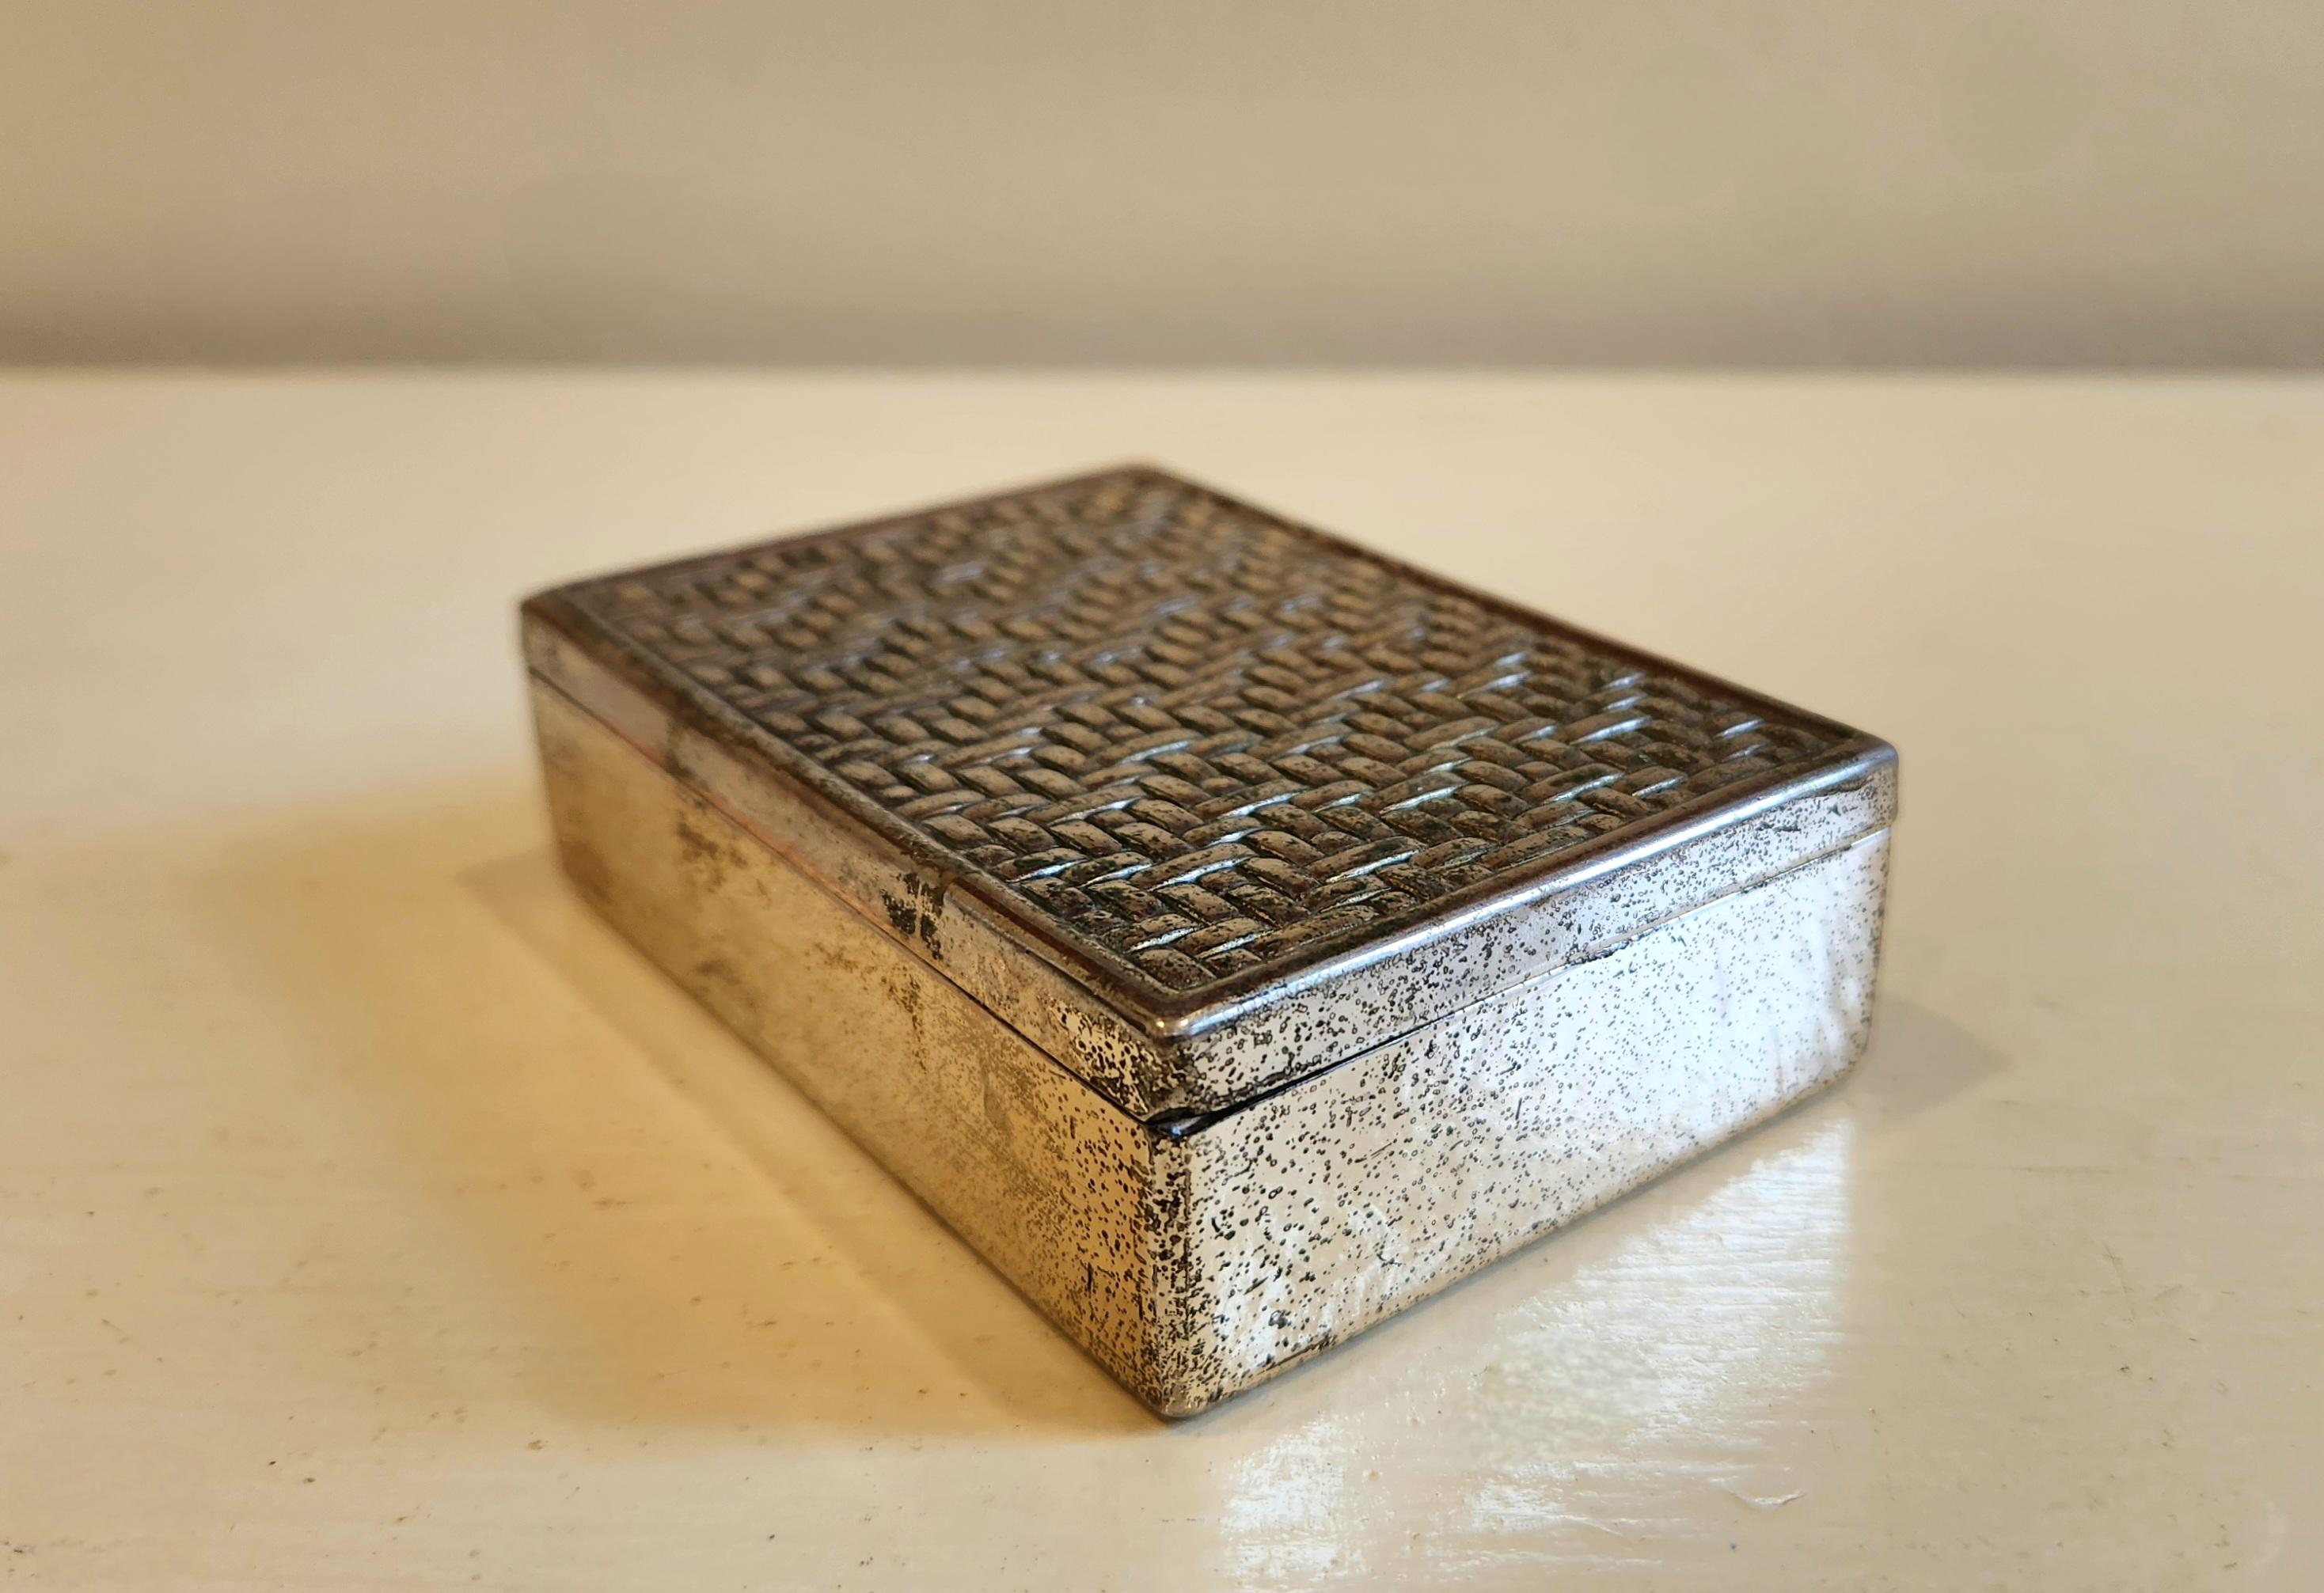 Diese Dose hat eine sehr schöne Silberpatina, obwohl sie nicht als Silber gekennzeichnet ist. Auf der Oberseite der Schachtel befindet sich ein elegantes Design aus verschlungenen Gittern. Es würde schön aussehen als Dekoration auf einem